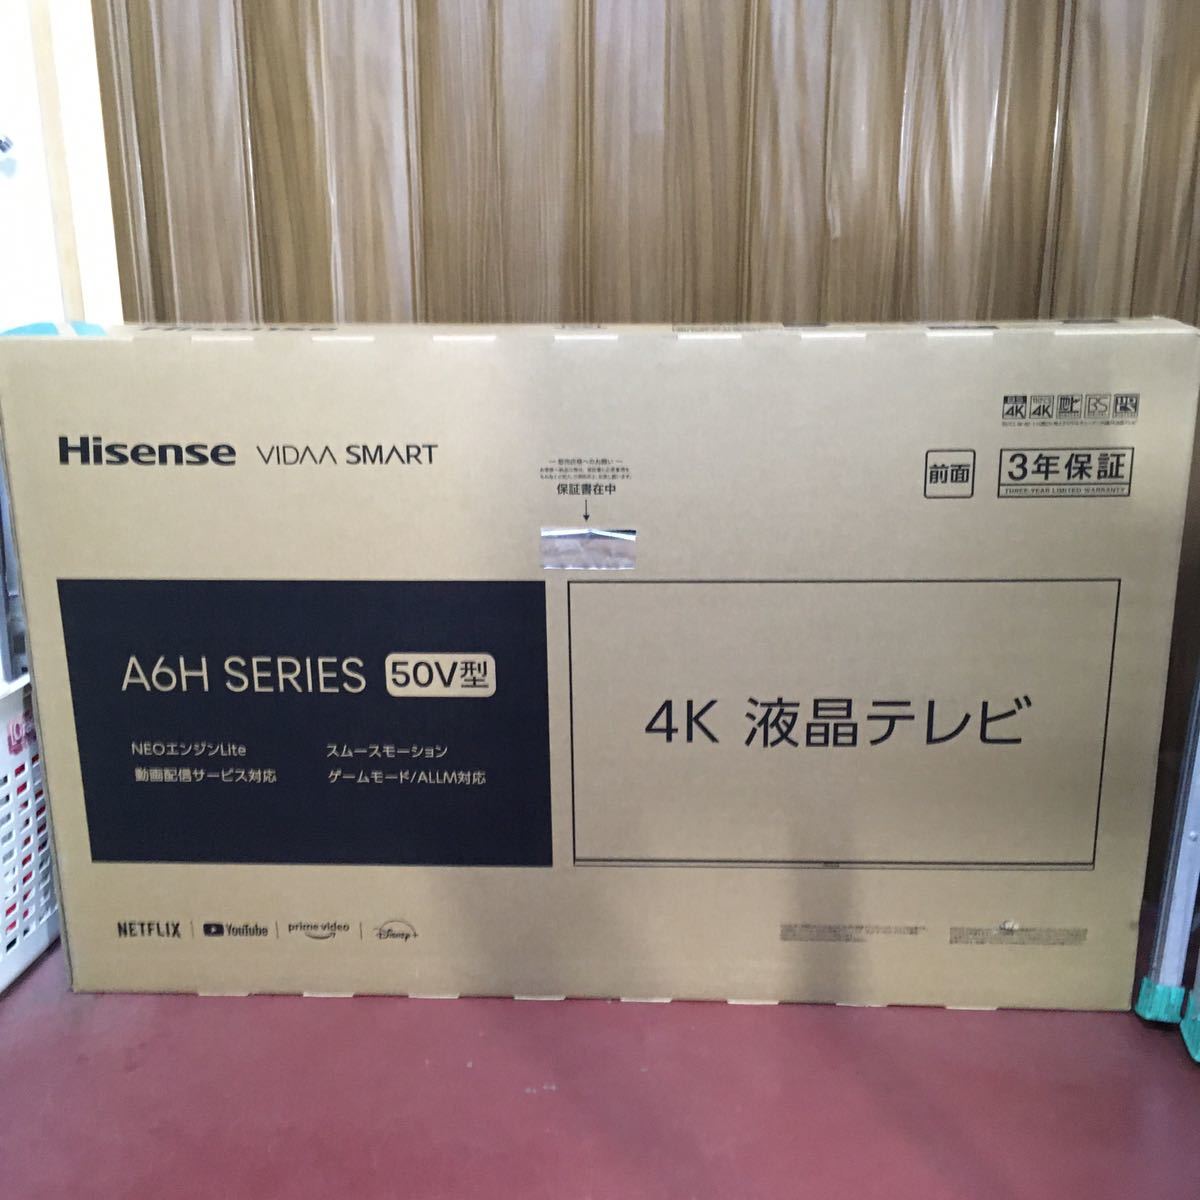 LL115 Hisense ハイセンス 4K液晶テレビ 50A6H 50V型 CARRR